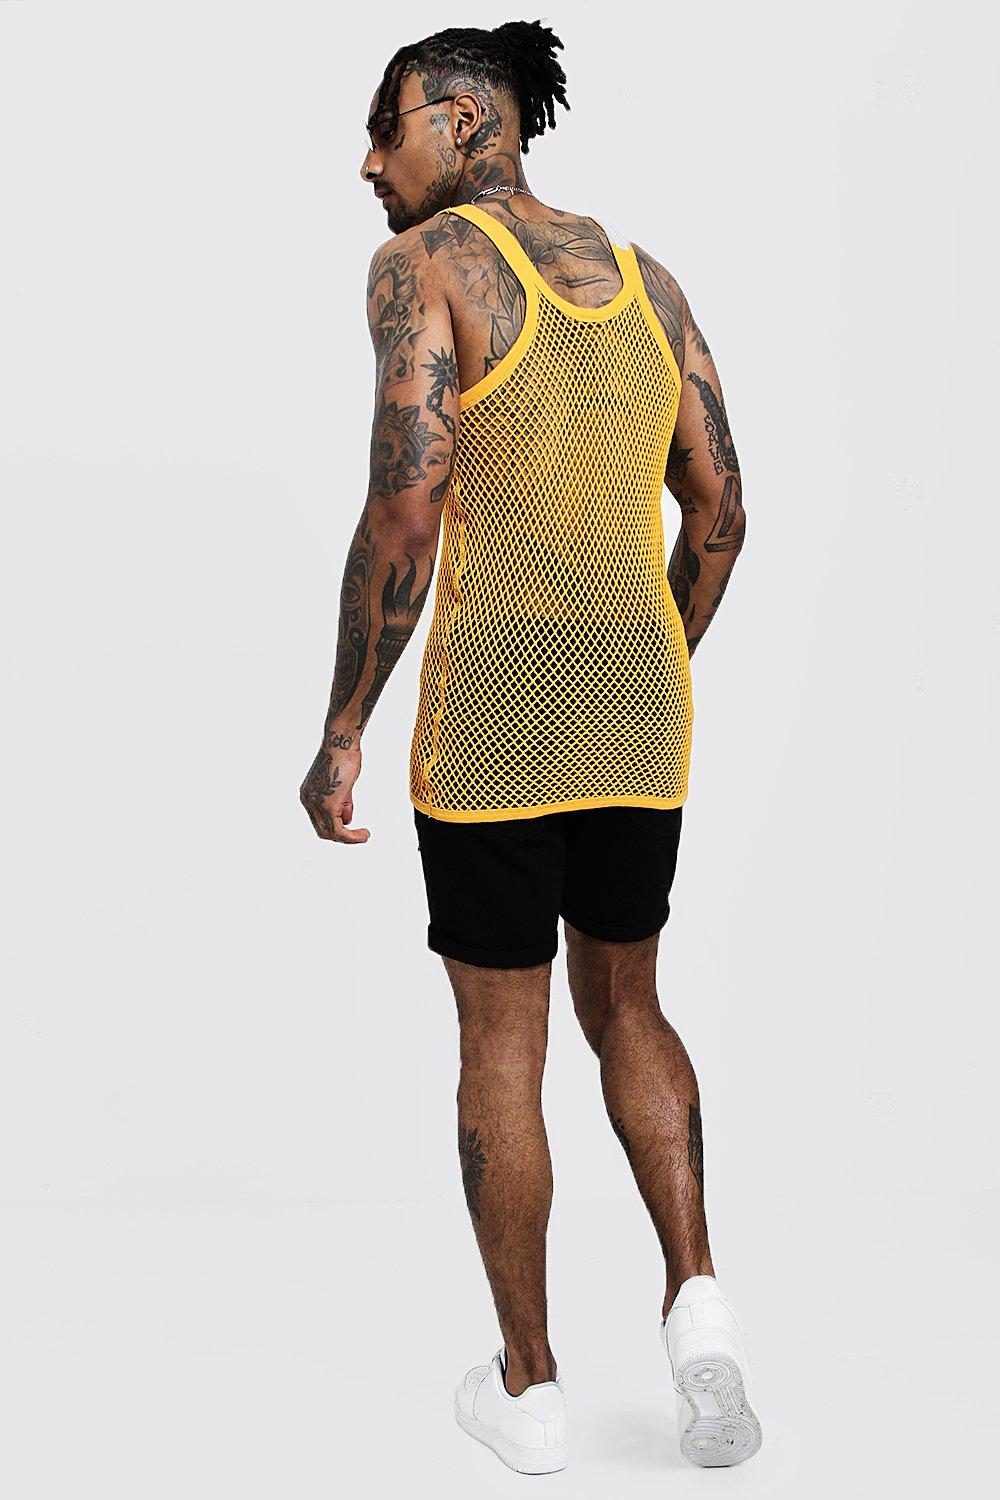 mens vest mesh airtex light summer 100% cotton gym tank top vests S M L XL XXL 